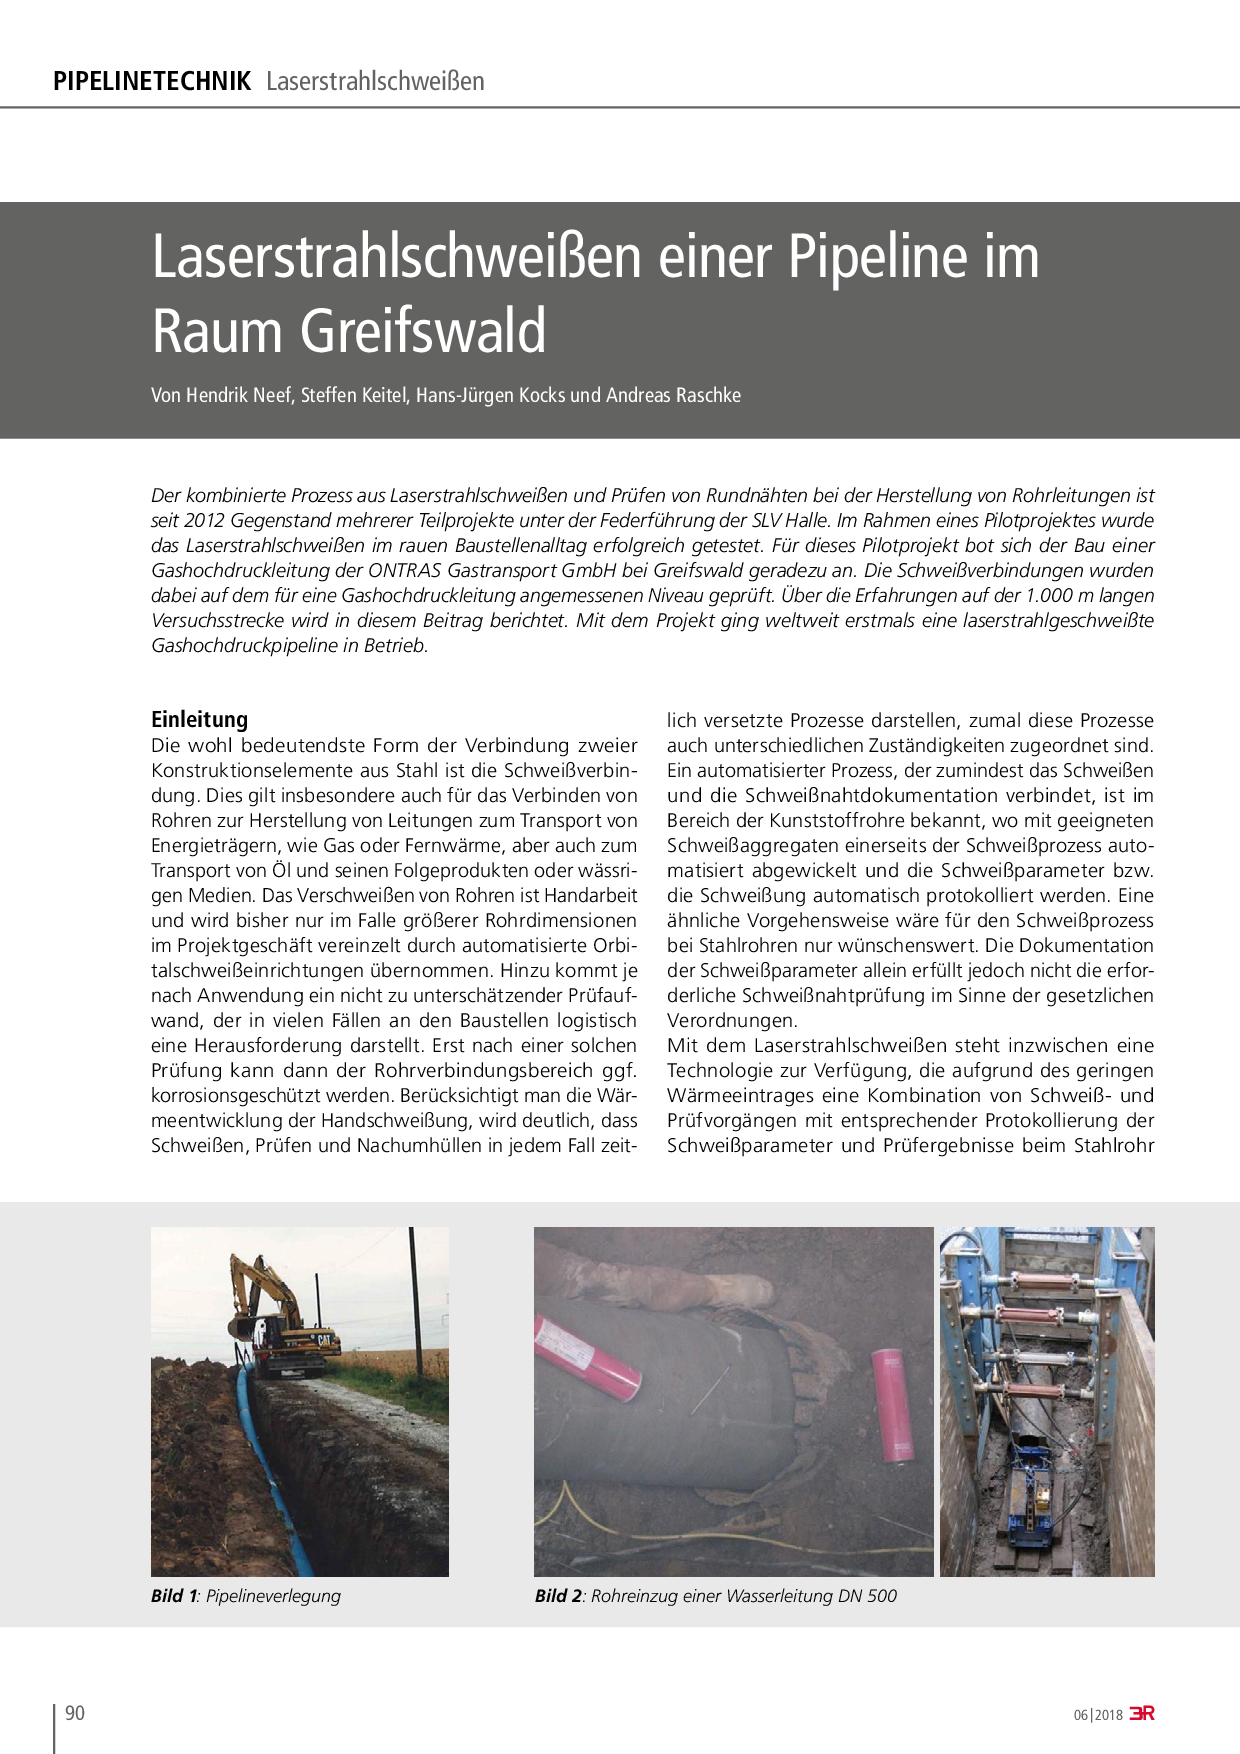 Laserstrahlschweißen einer Pipeline im Raum Greifswald